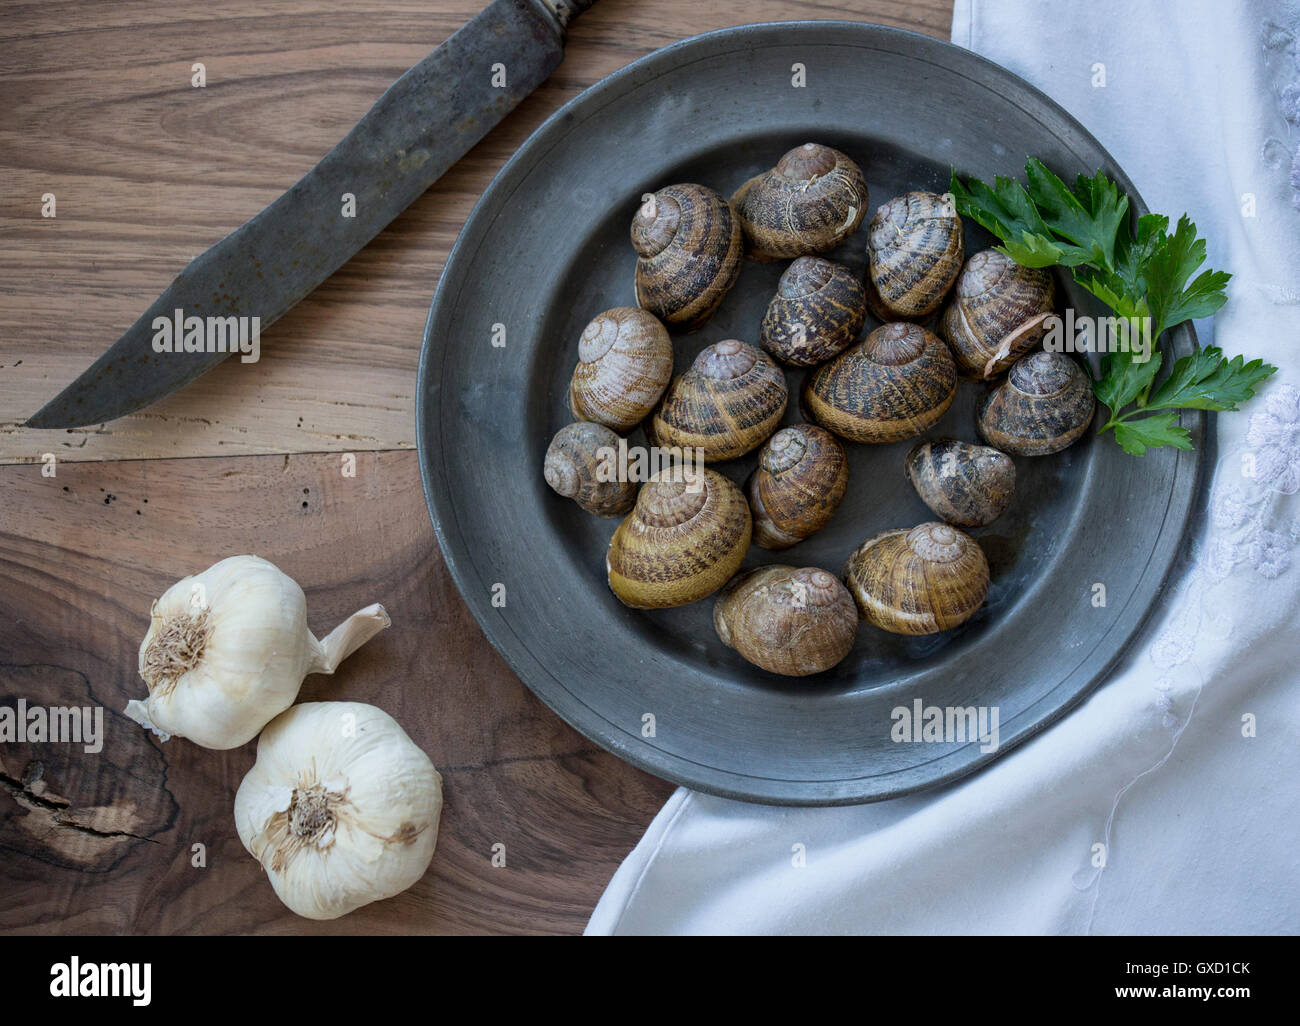 Vista aerea di gusci di lumaca e aglio sul tavolo Foto Stock